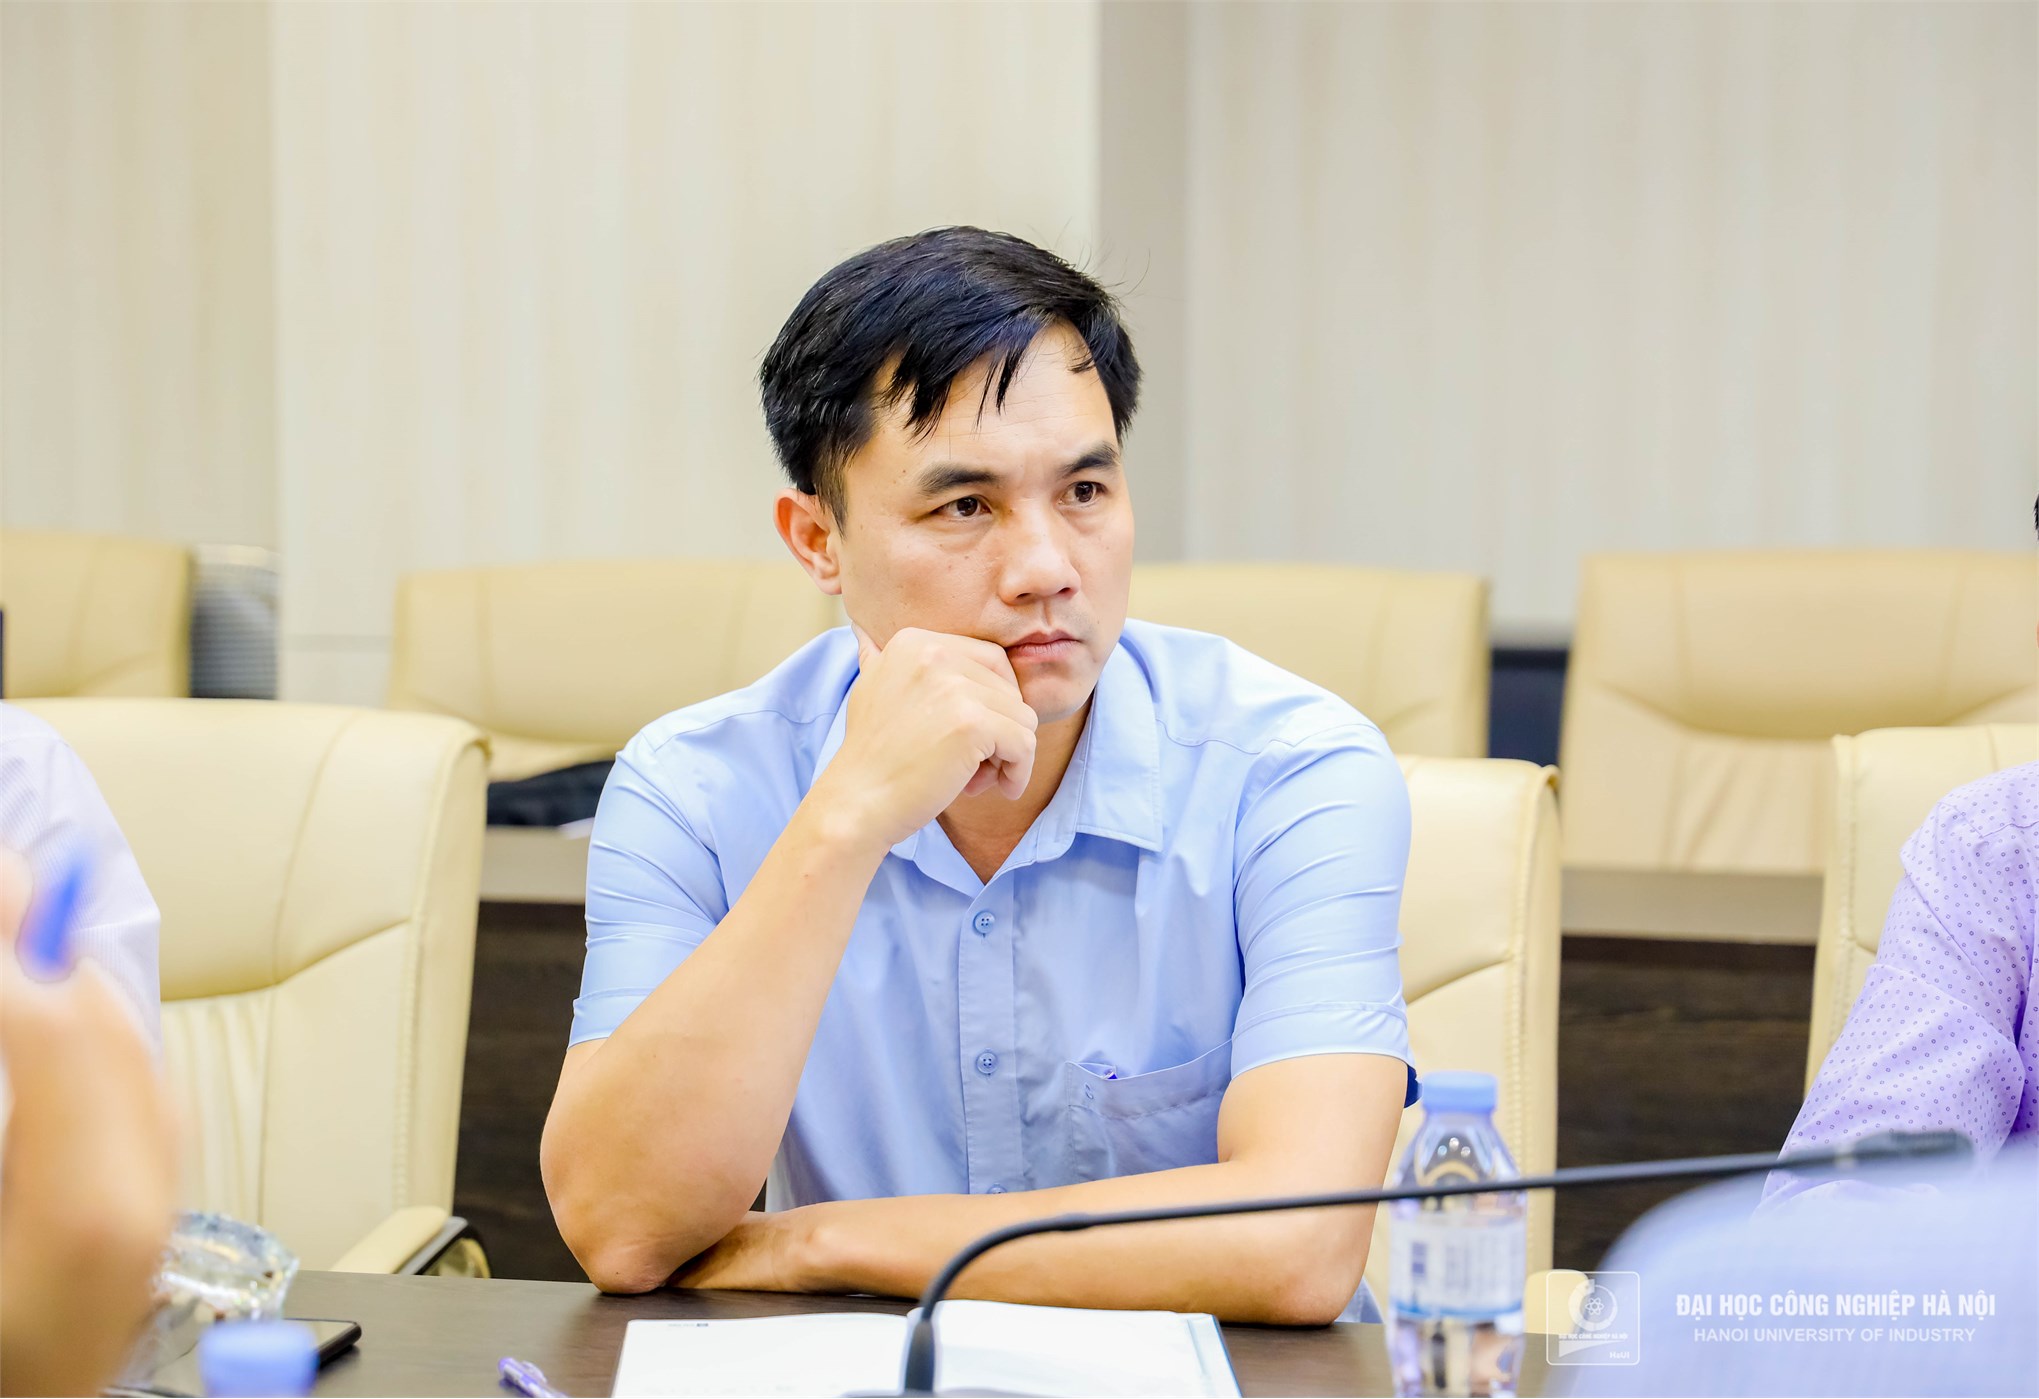 Đại học Công nghiệp Hà Nội tiếp đoàn công tác Trường Cao đẳng Sơn La